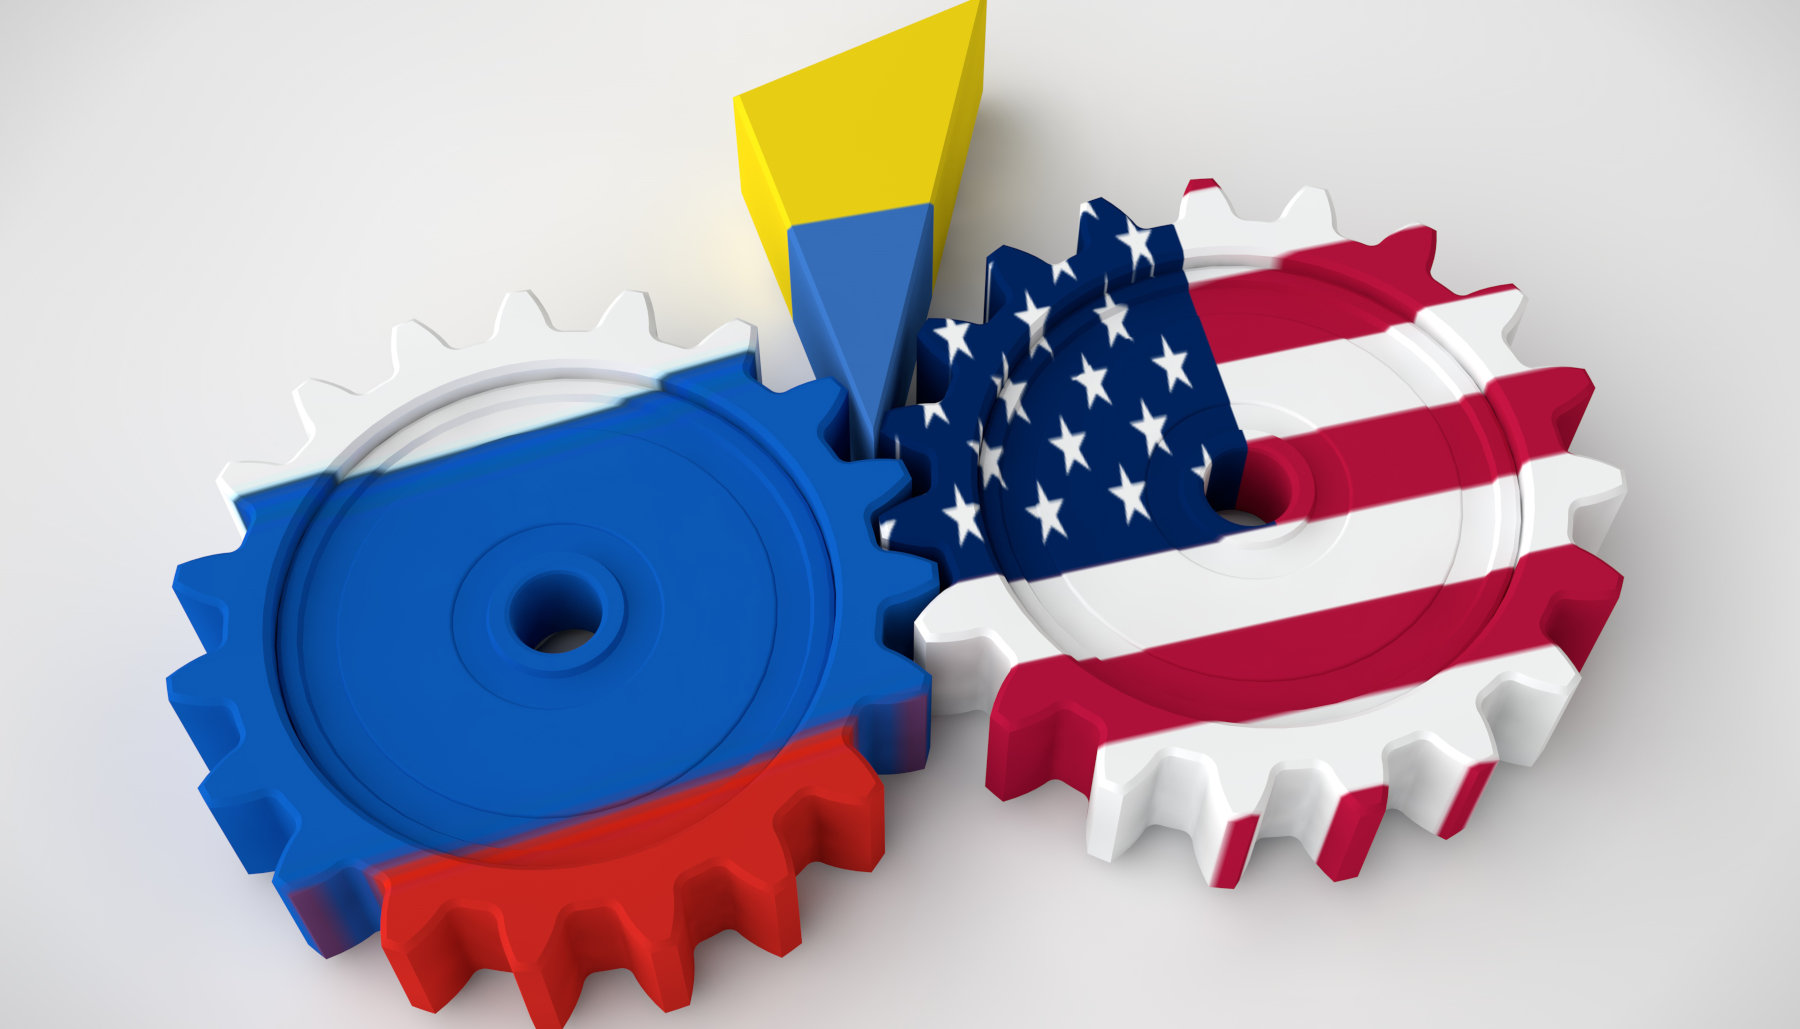 Οι ΗΠΑ σε ισορροπία τρόμου – Πώς θα βοηθήσουν την Ουκρανία χωρίς να προκαλέσουν ευρύτερο πόλεμο